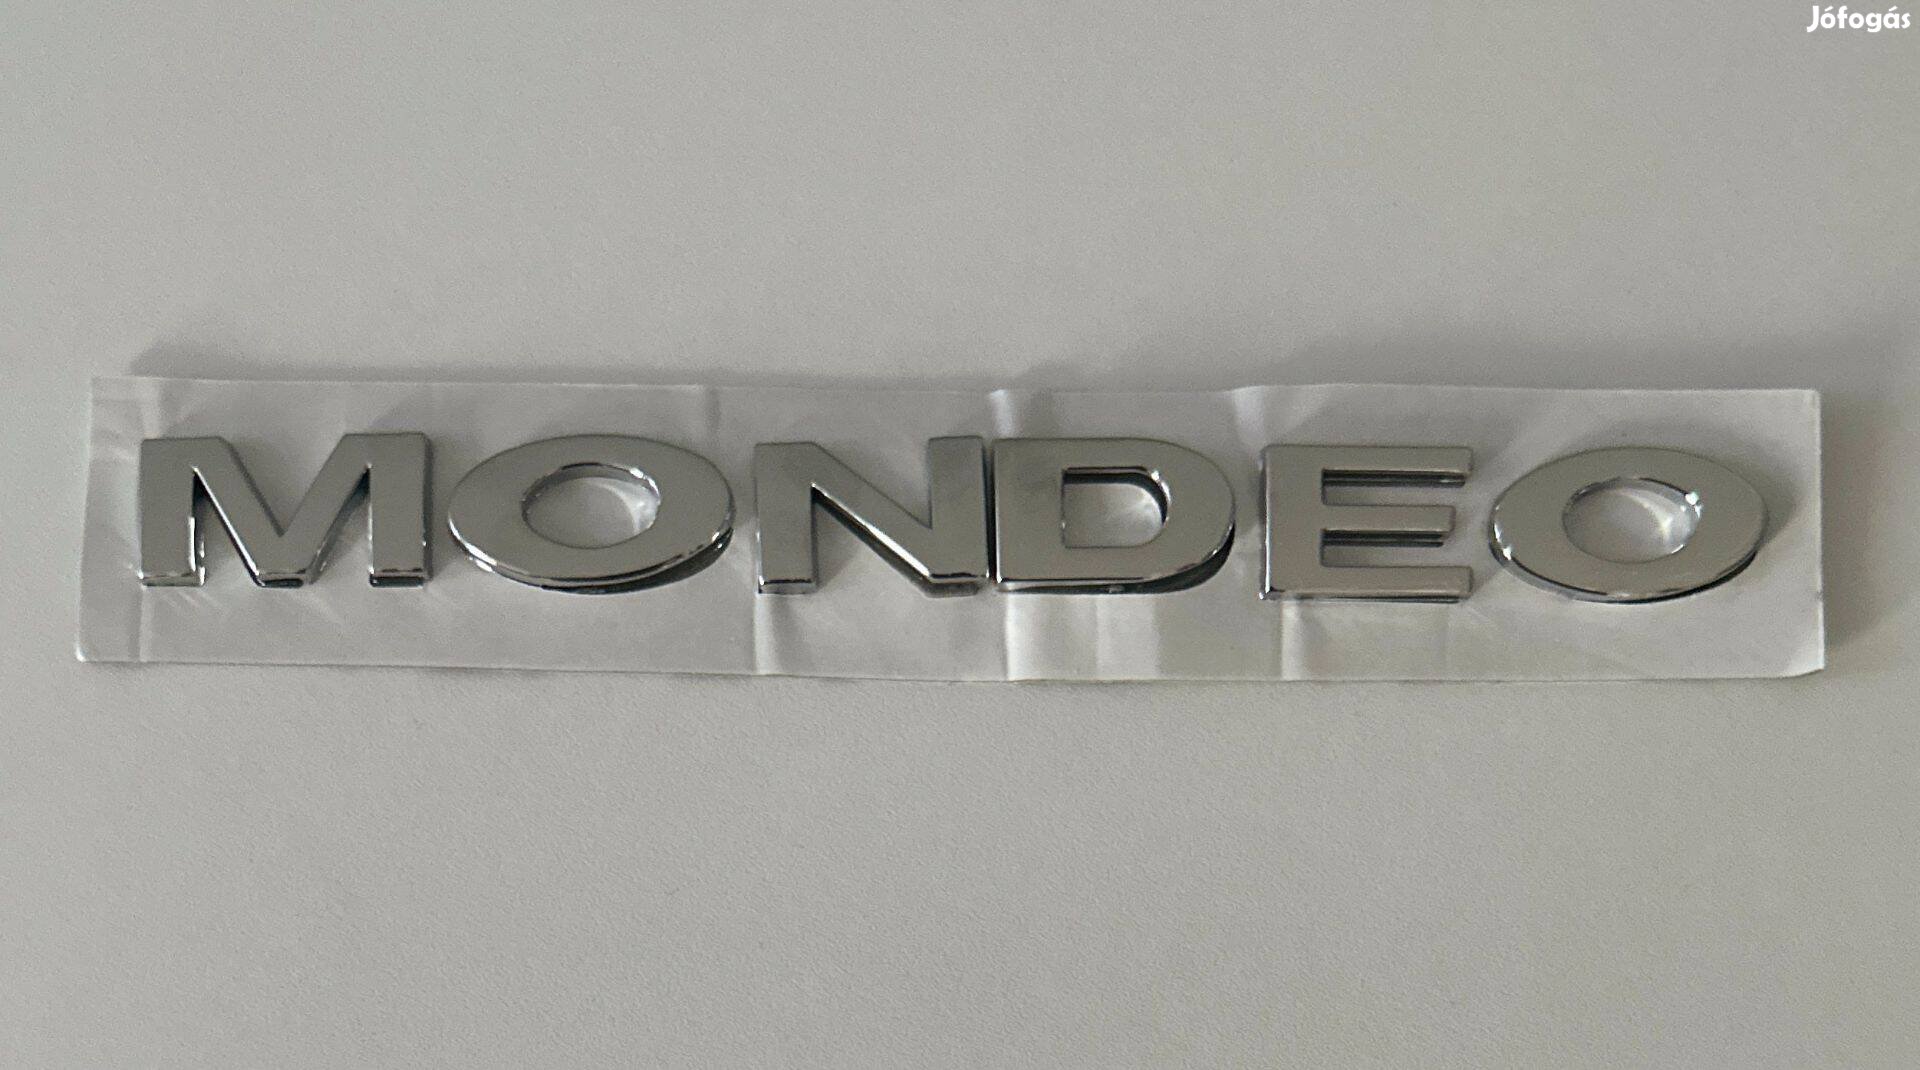 Új Ford Mondeo felirat embléma jel logó kiegészítő gépház csomagtér